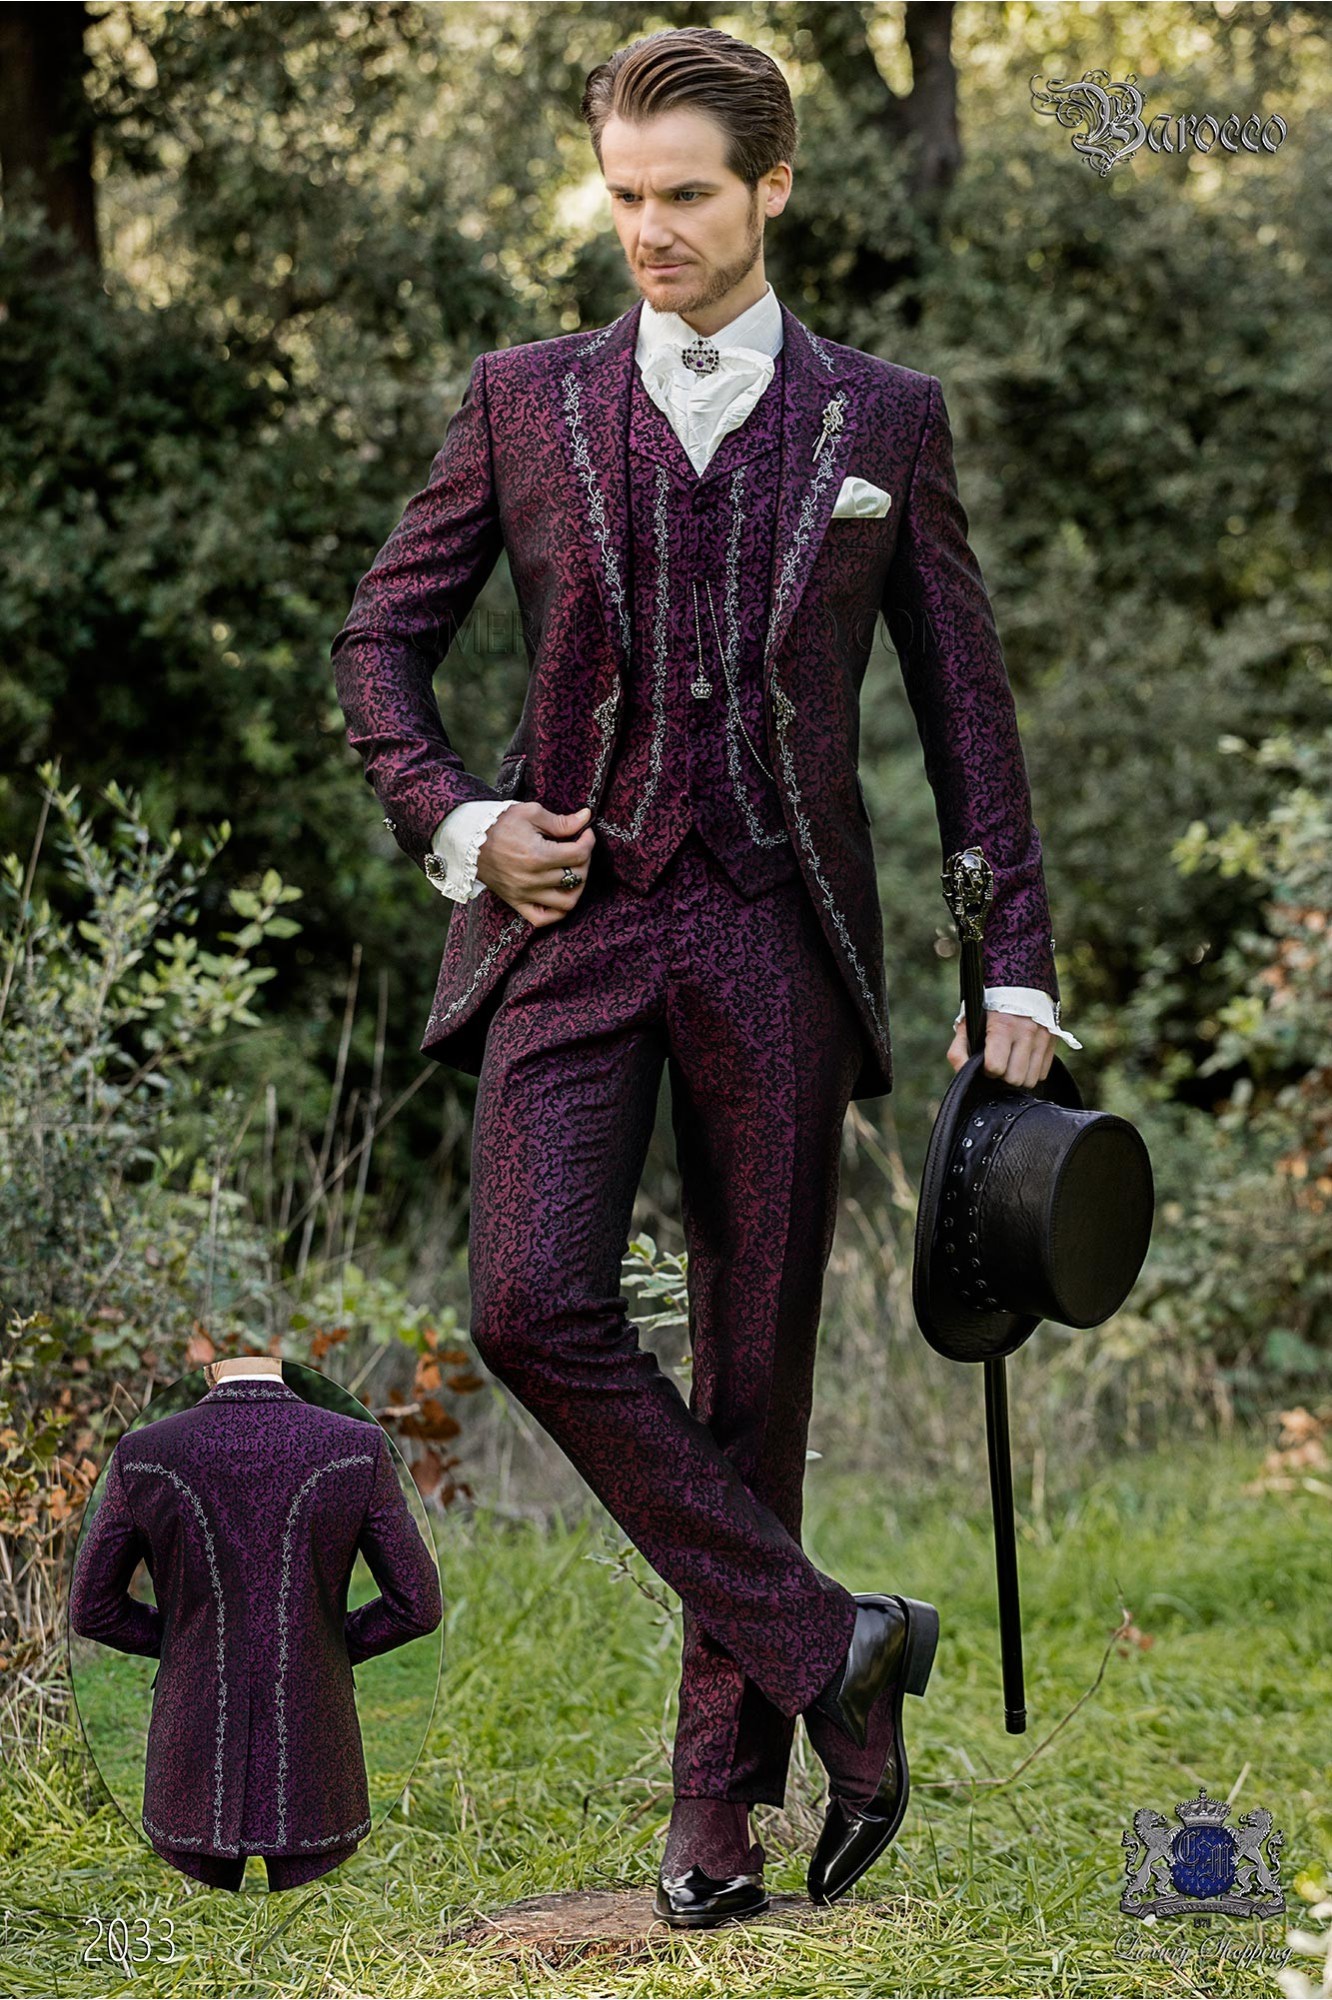 levita de época en tejido jacquard púrpura con bordados plateados y broche de cristal modelo: 2033 Mario Moyano colección Barroco